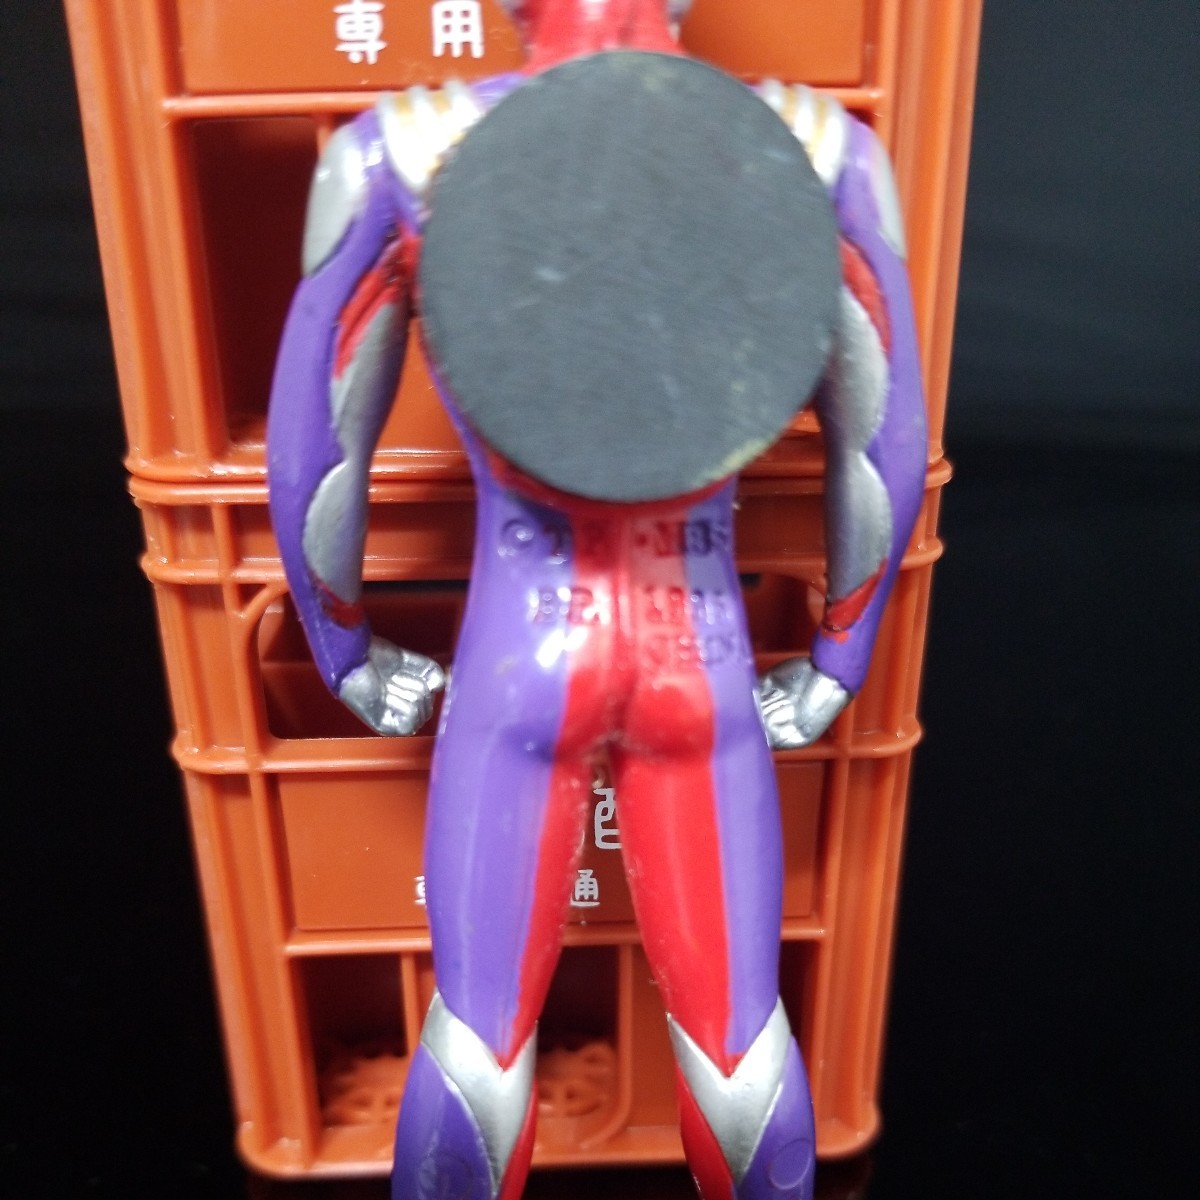  иен . Pro Ultraman Tiga Magic фигурка изображение . полностью . перед ставкой. обязательно о себе . описание товара . прочитайте пожалуйста фигурка только. 